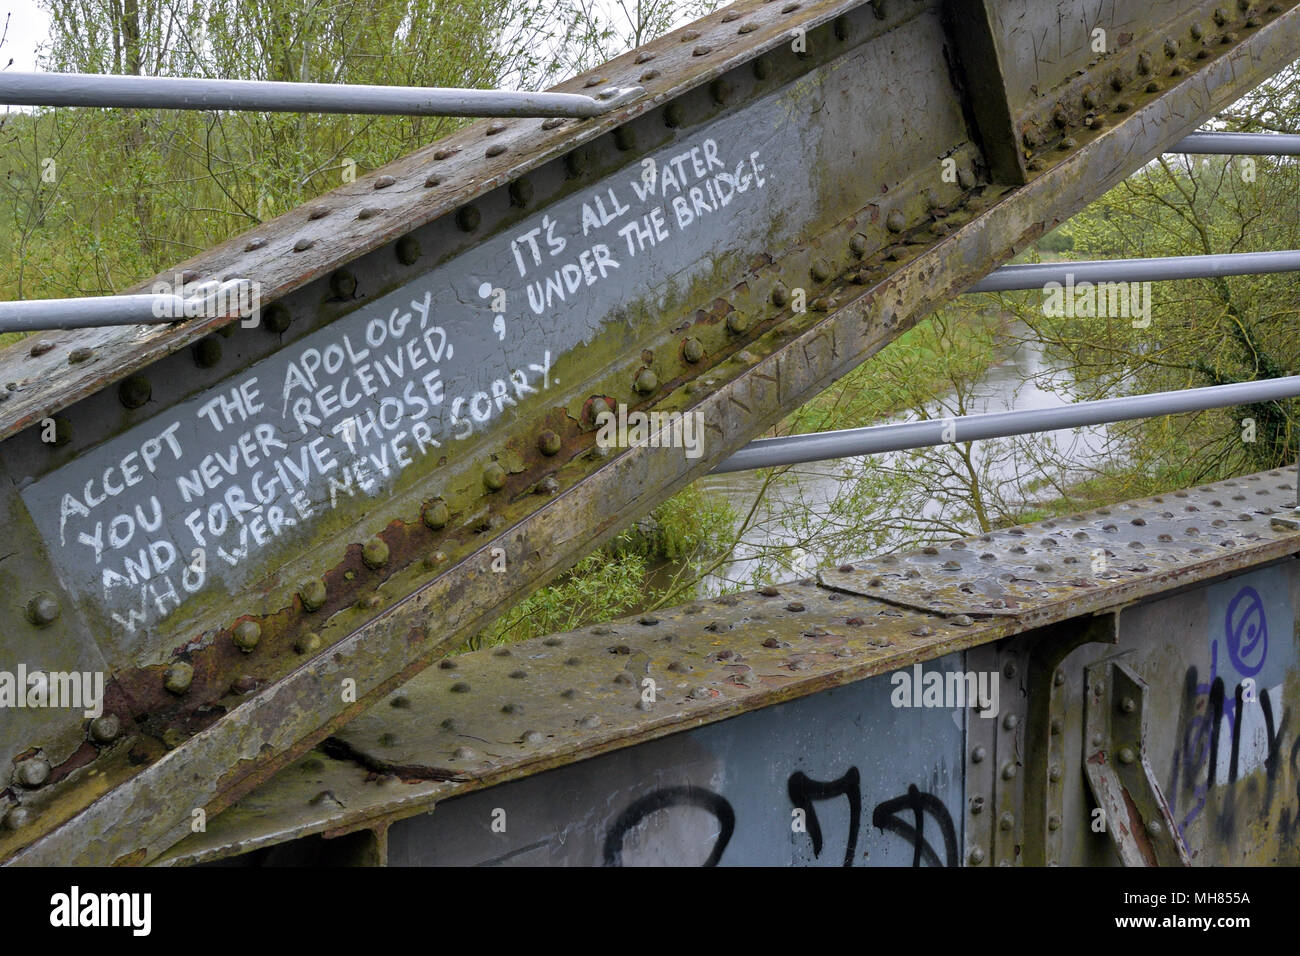 Graffiti sur un vieux philosophique-frame pont de chemin de fer traversant la rivière Wensum à Drayton, Norfolk, qui fait maintenant partie de l'hôtel Marriott's Way sentier de longue distance Banque D'Images